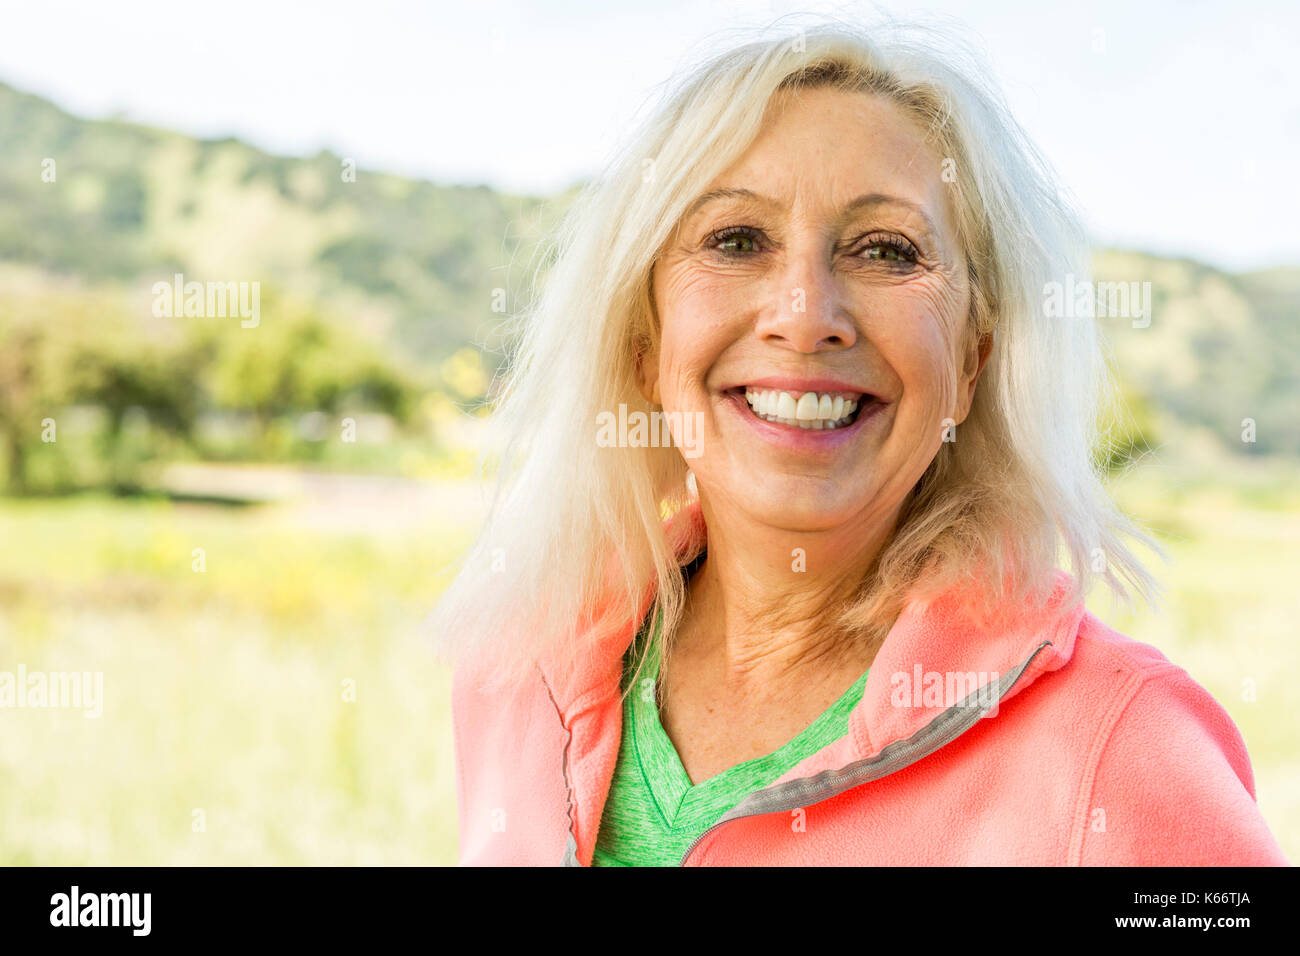 Portrait of smiling caucasian woman outdoors Banque D'Images